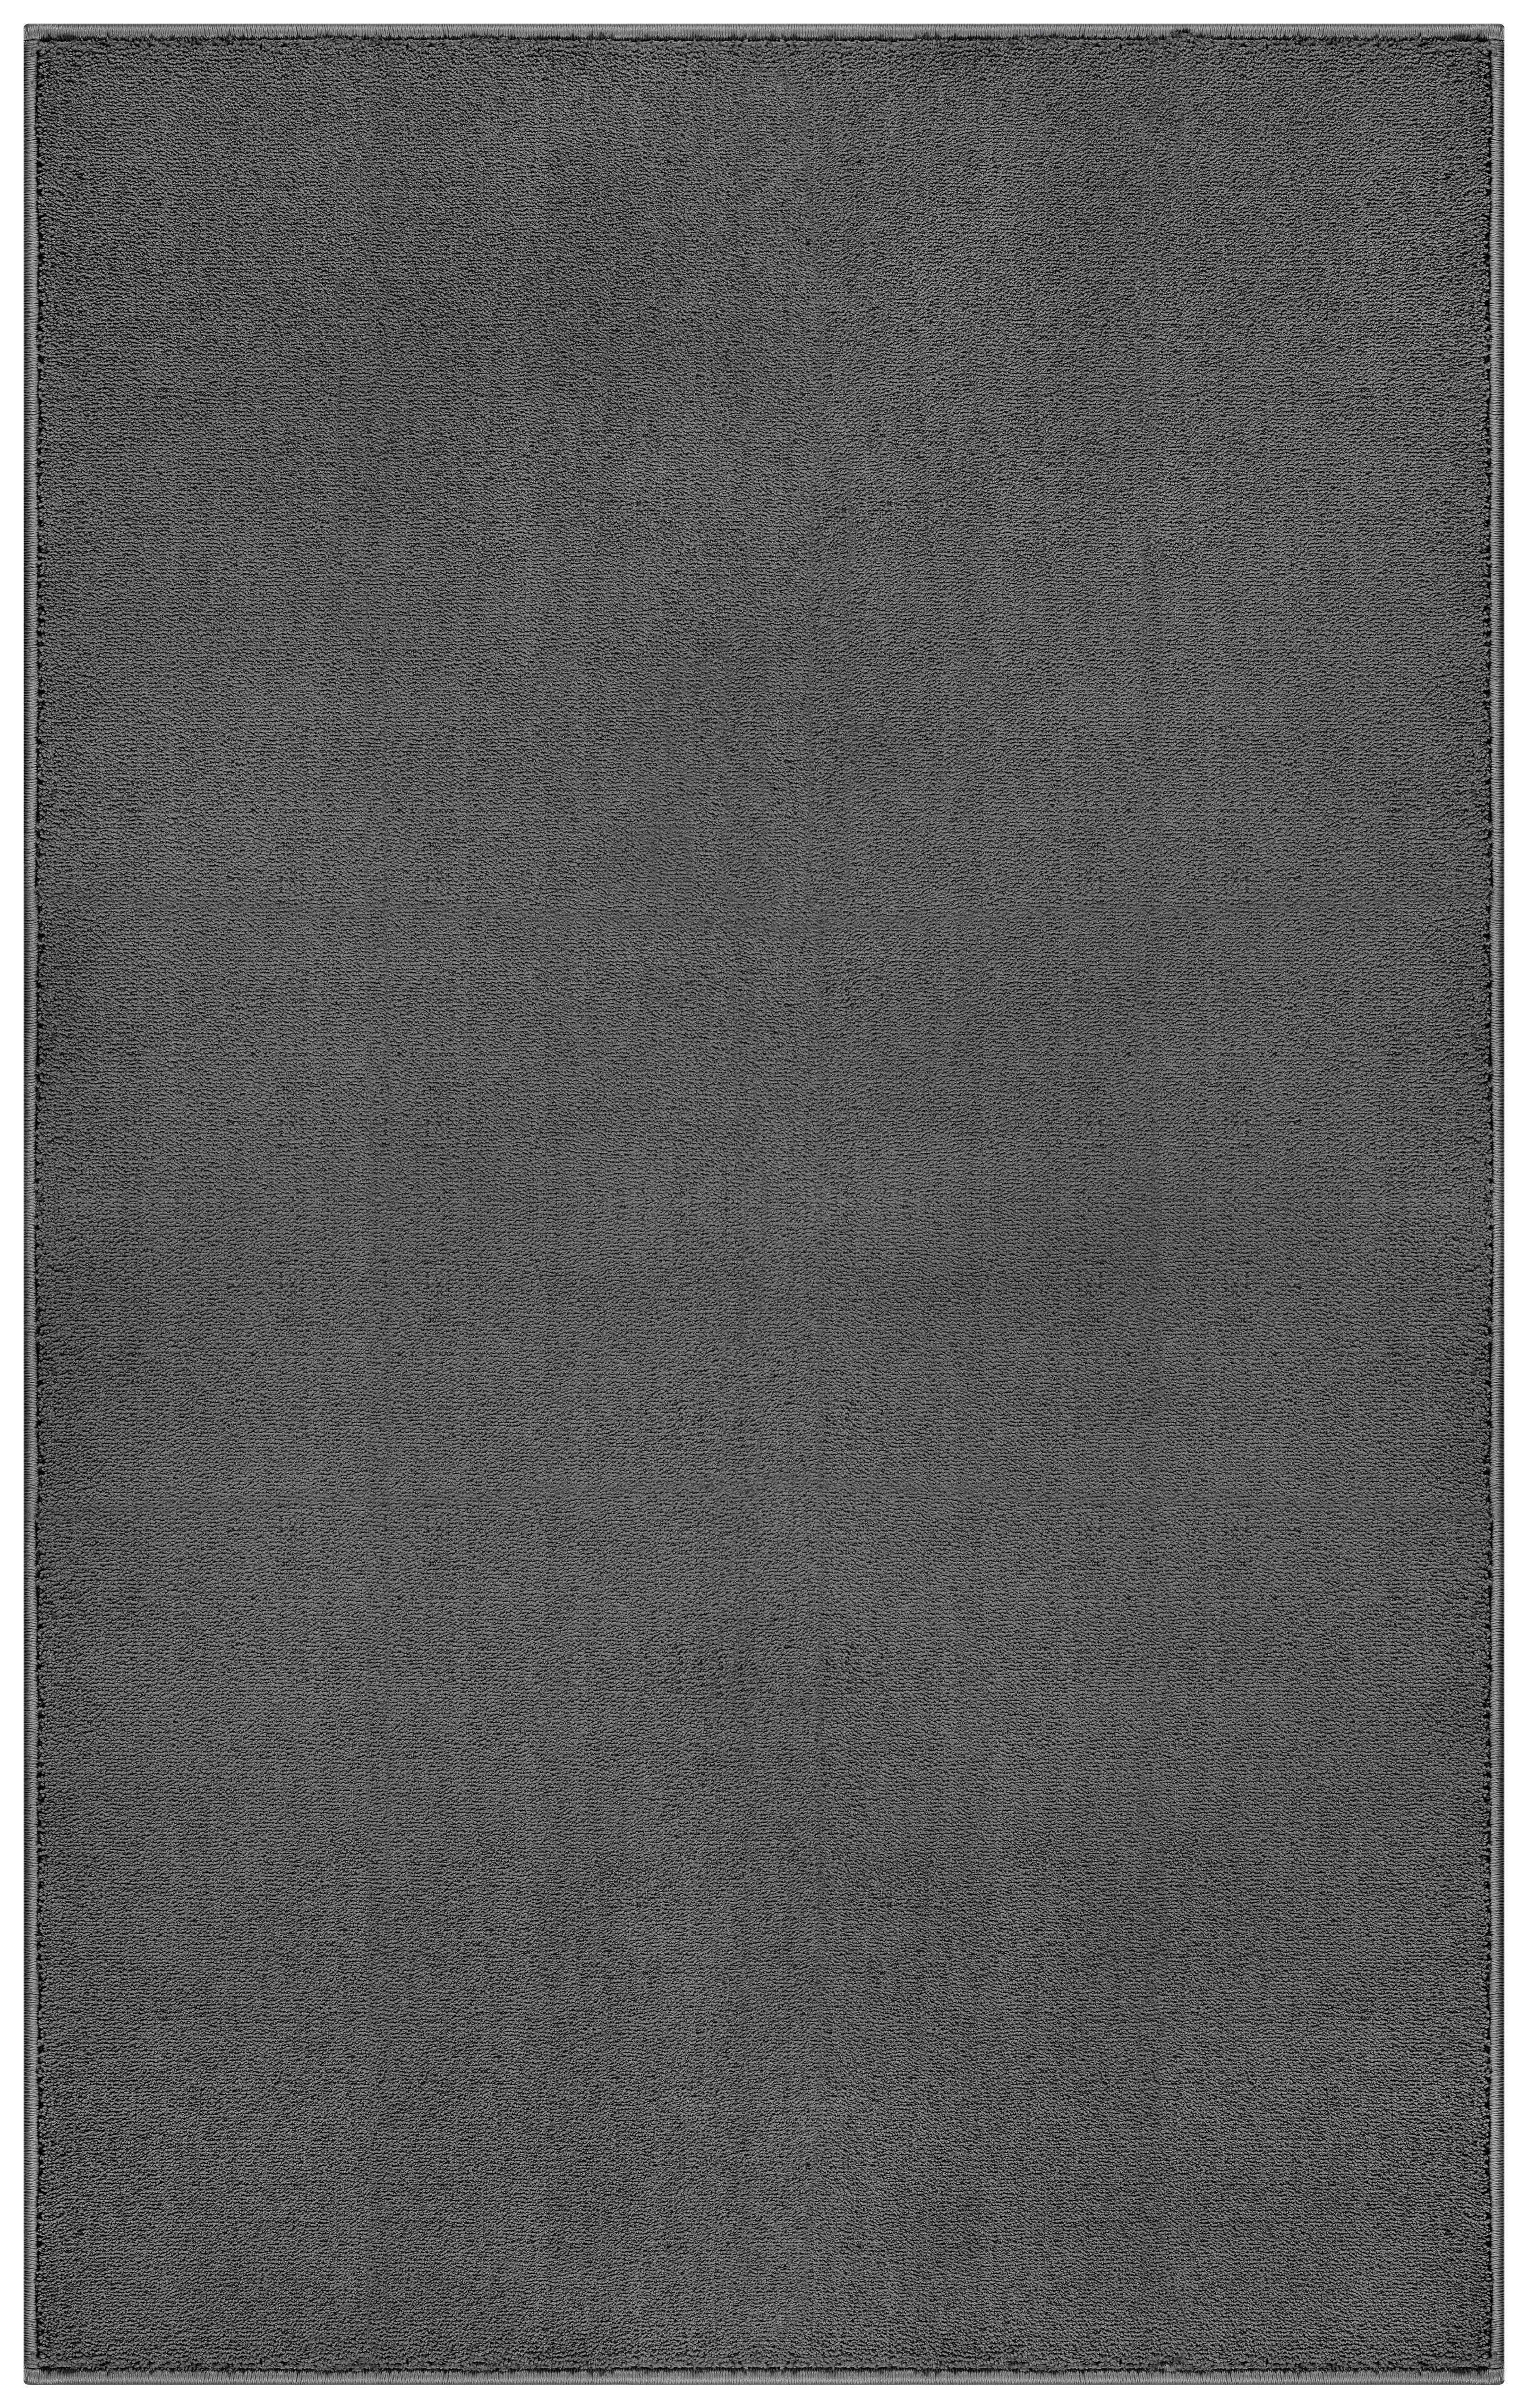 Tkaný Koberec Susi 1, 150/220cm, Antracitová - antracitová, Konvenčný, textil (150/220cm) - Modern Living